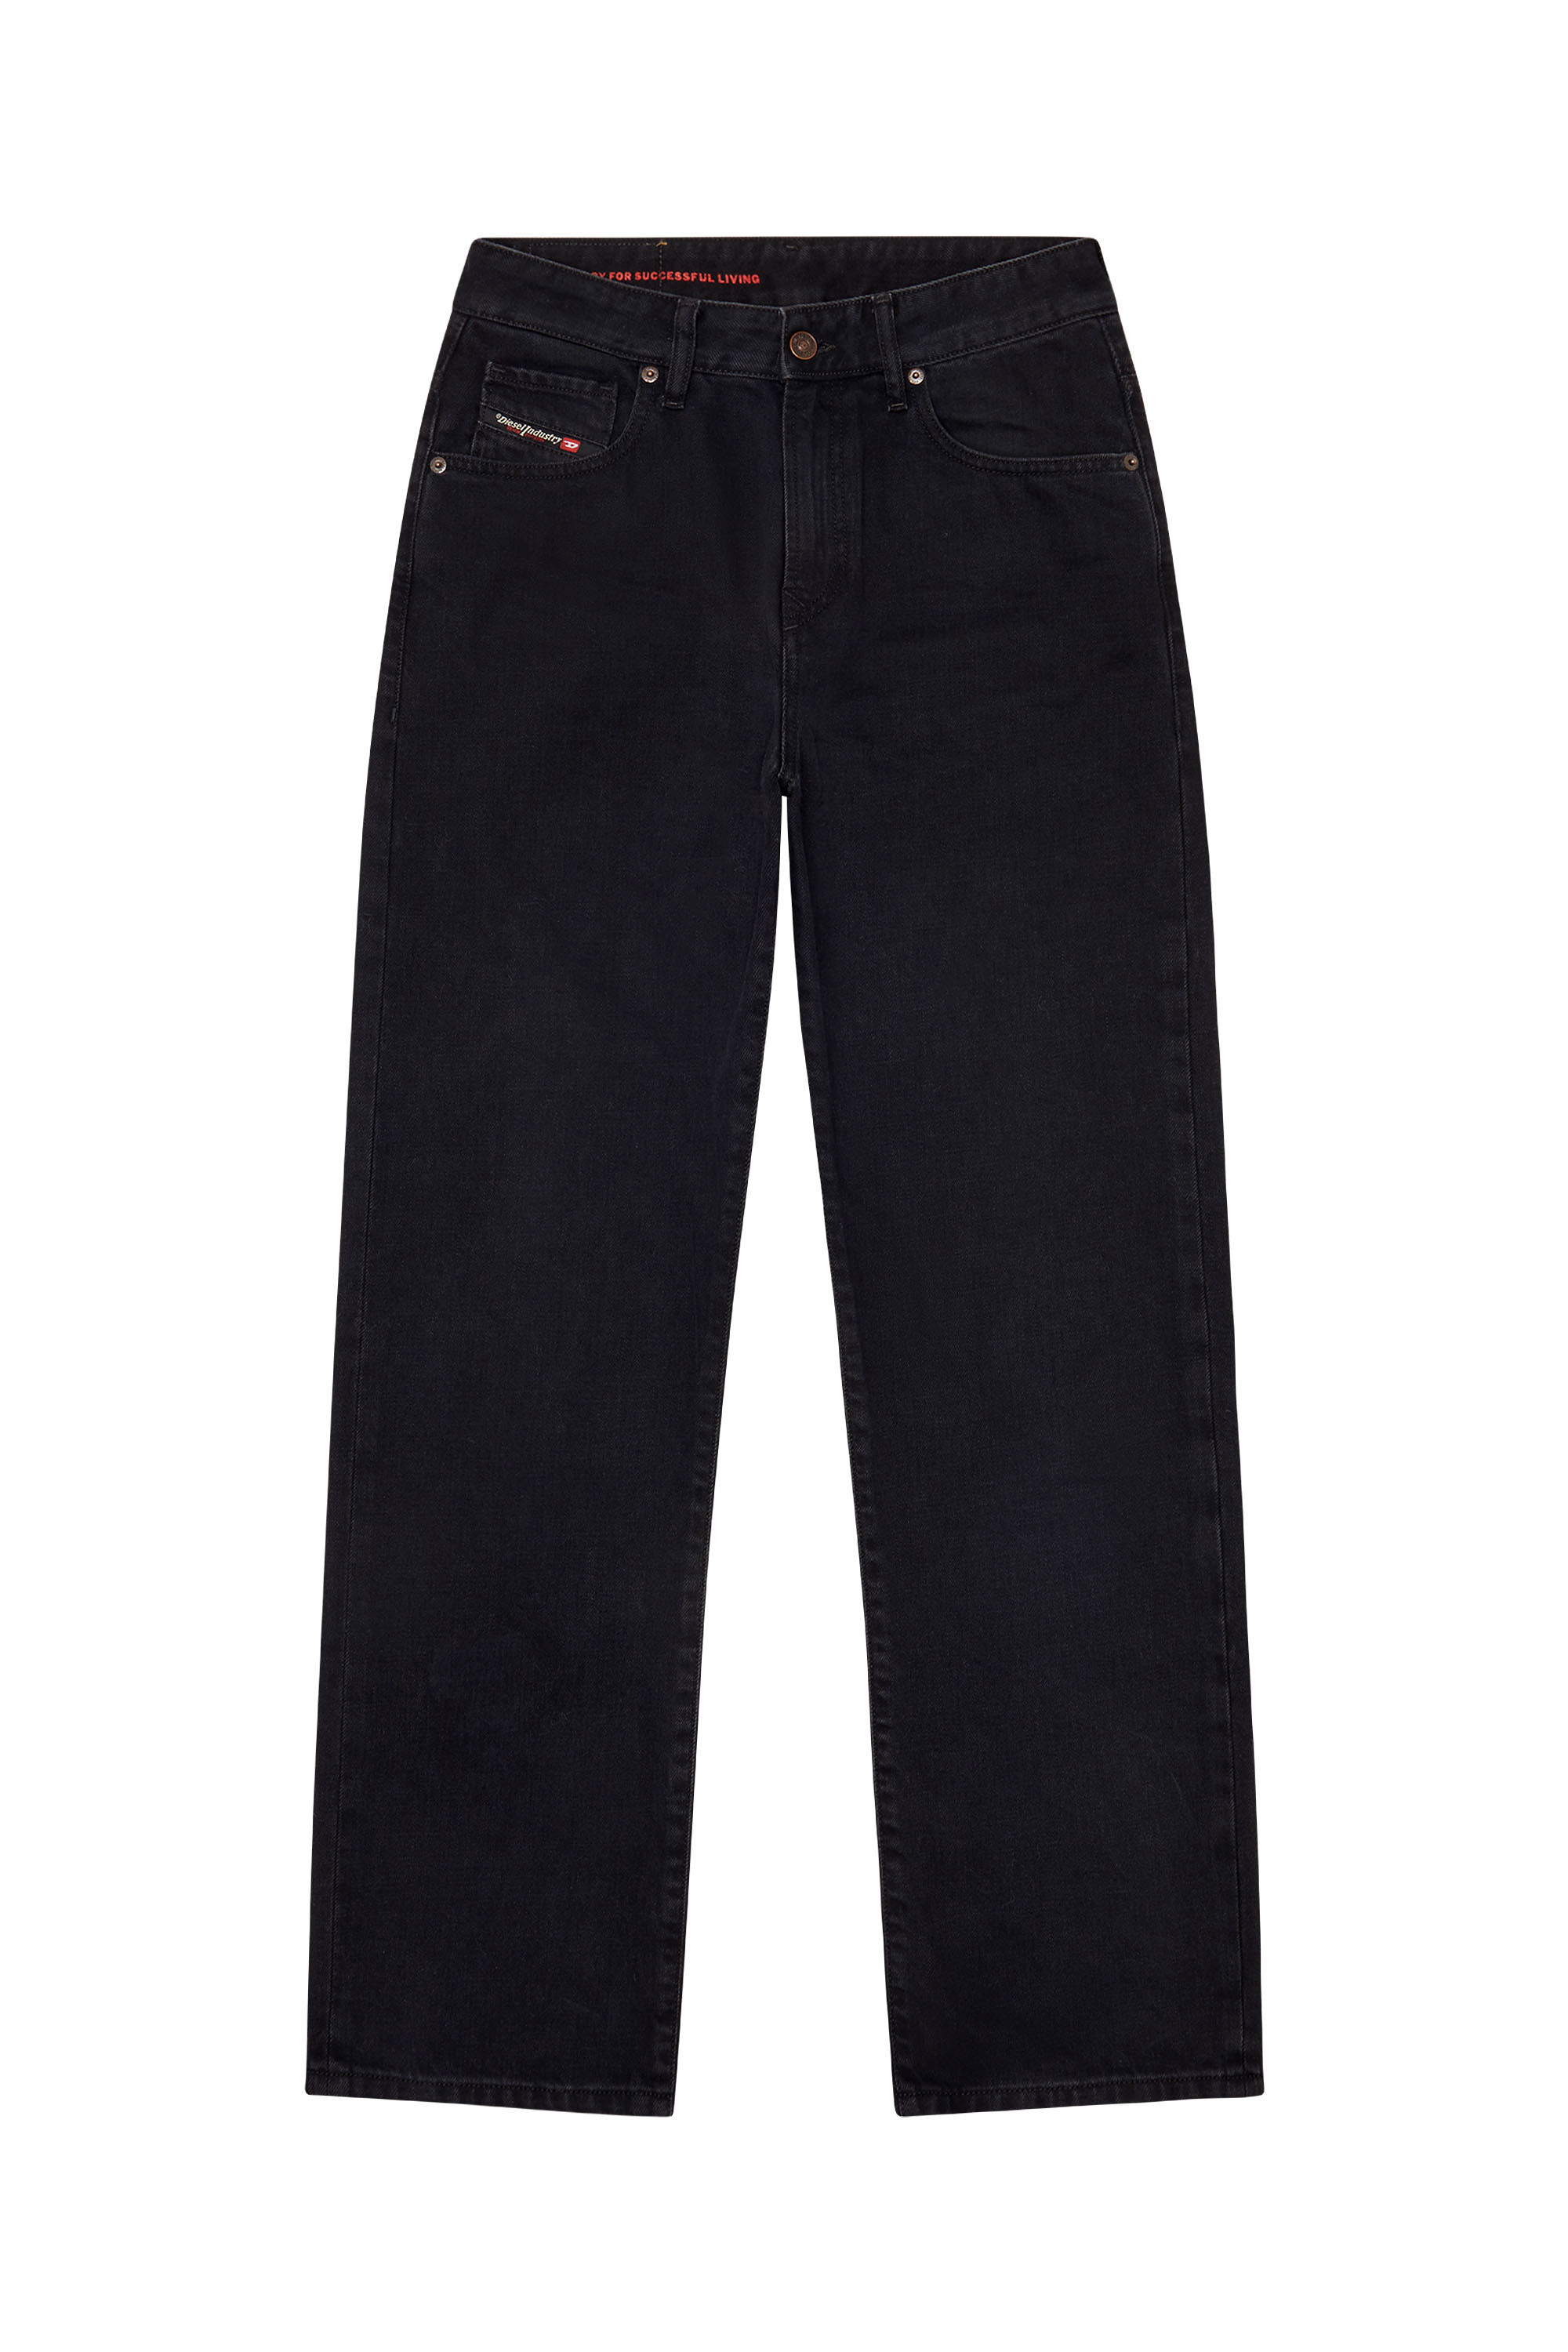 1999 Z09RL Straight Jeans, Black/Dark grey - Jeans